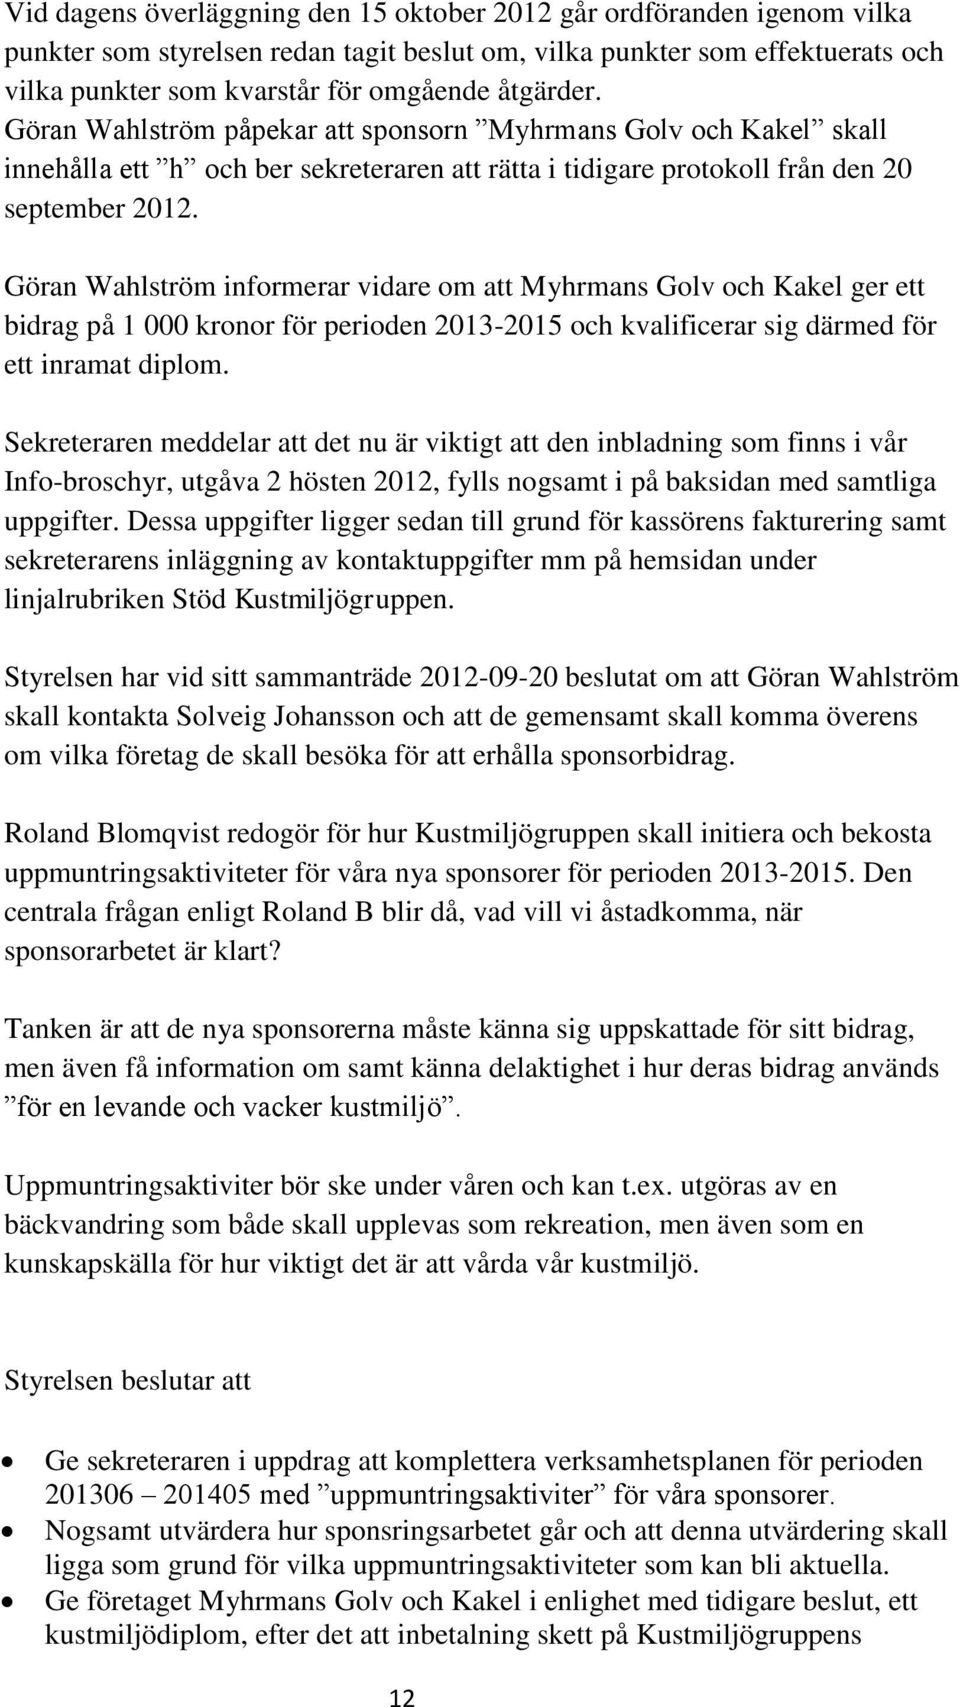 Göran Wahlström informerar vidare om att Myhrmans Golv och Kakel ger ett bidrag på 1 000 kronor för perioden 2013-2015 och kvalificerar sig därmed för ett inramat diplom.